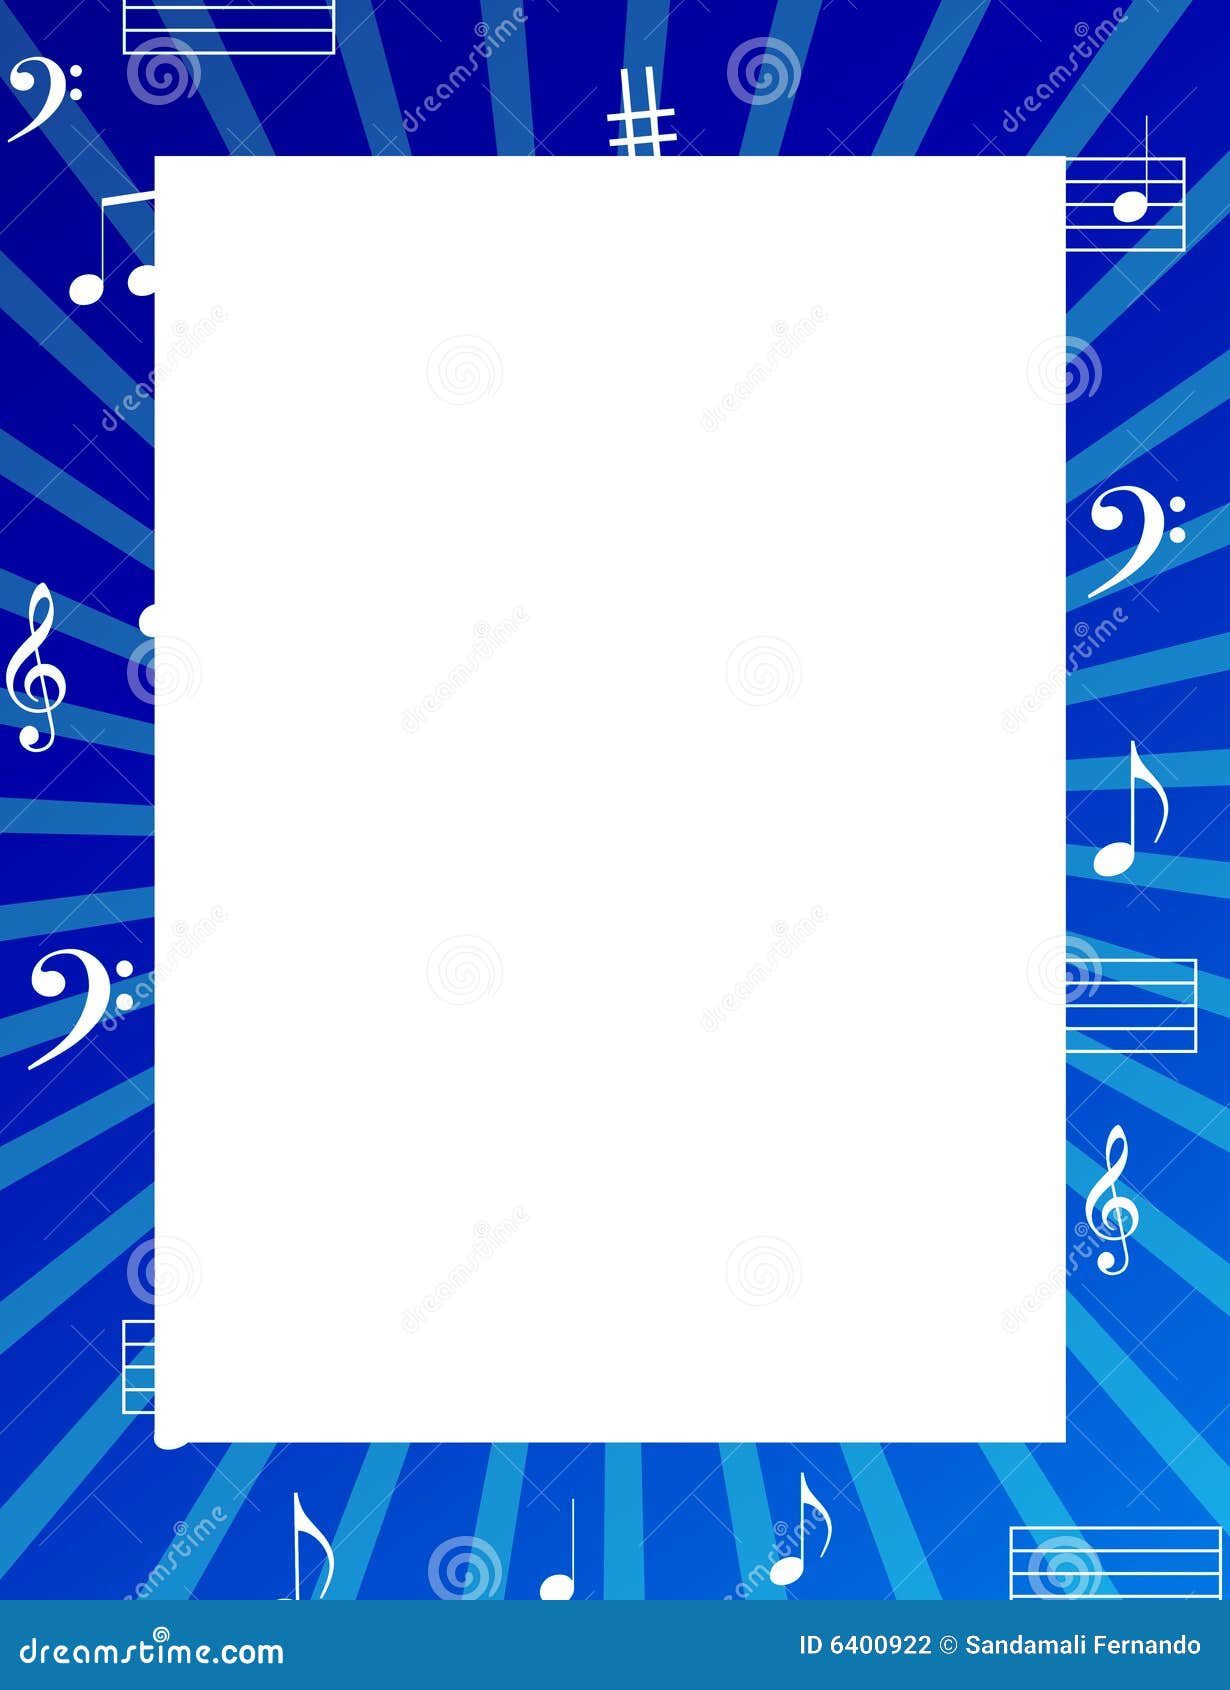 music notes border / frame